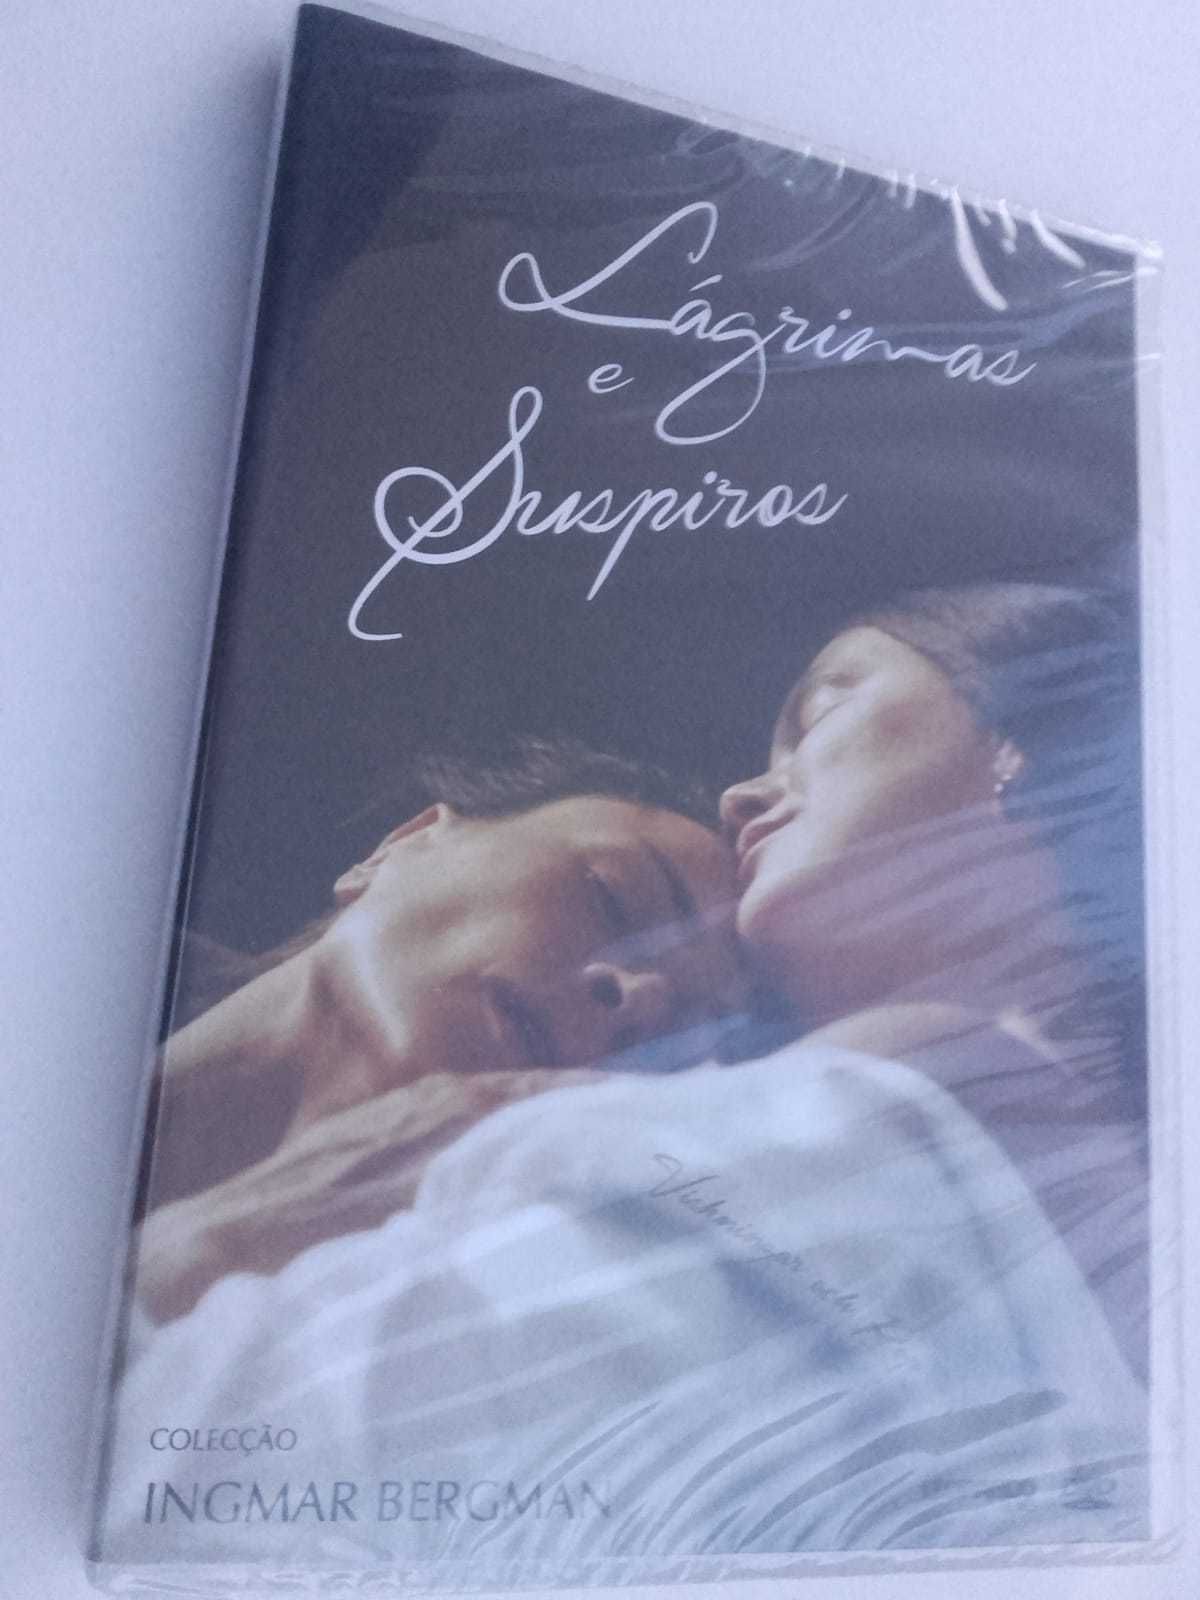 DVD "Lágrimas e suspiros", de Ingmar Bergman